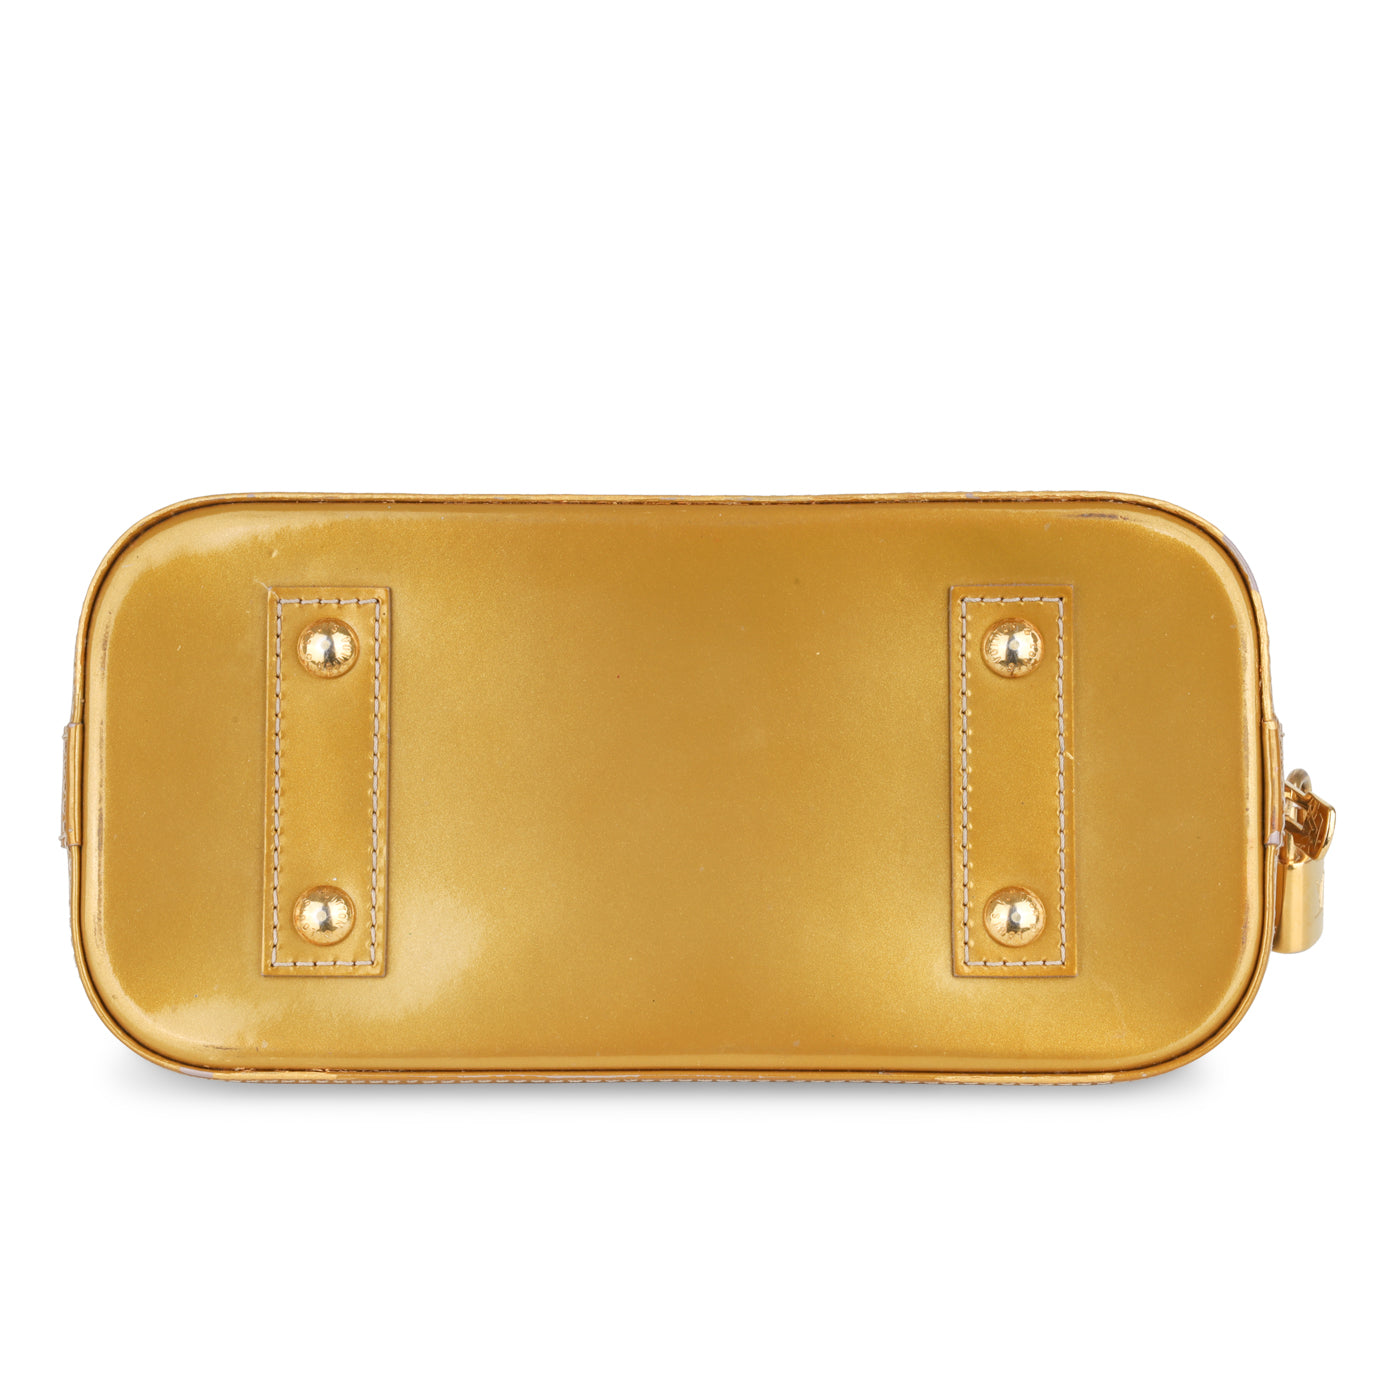 Louis Vuitton Pomme D’amour Monogram Vernis Alma BB Handbag